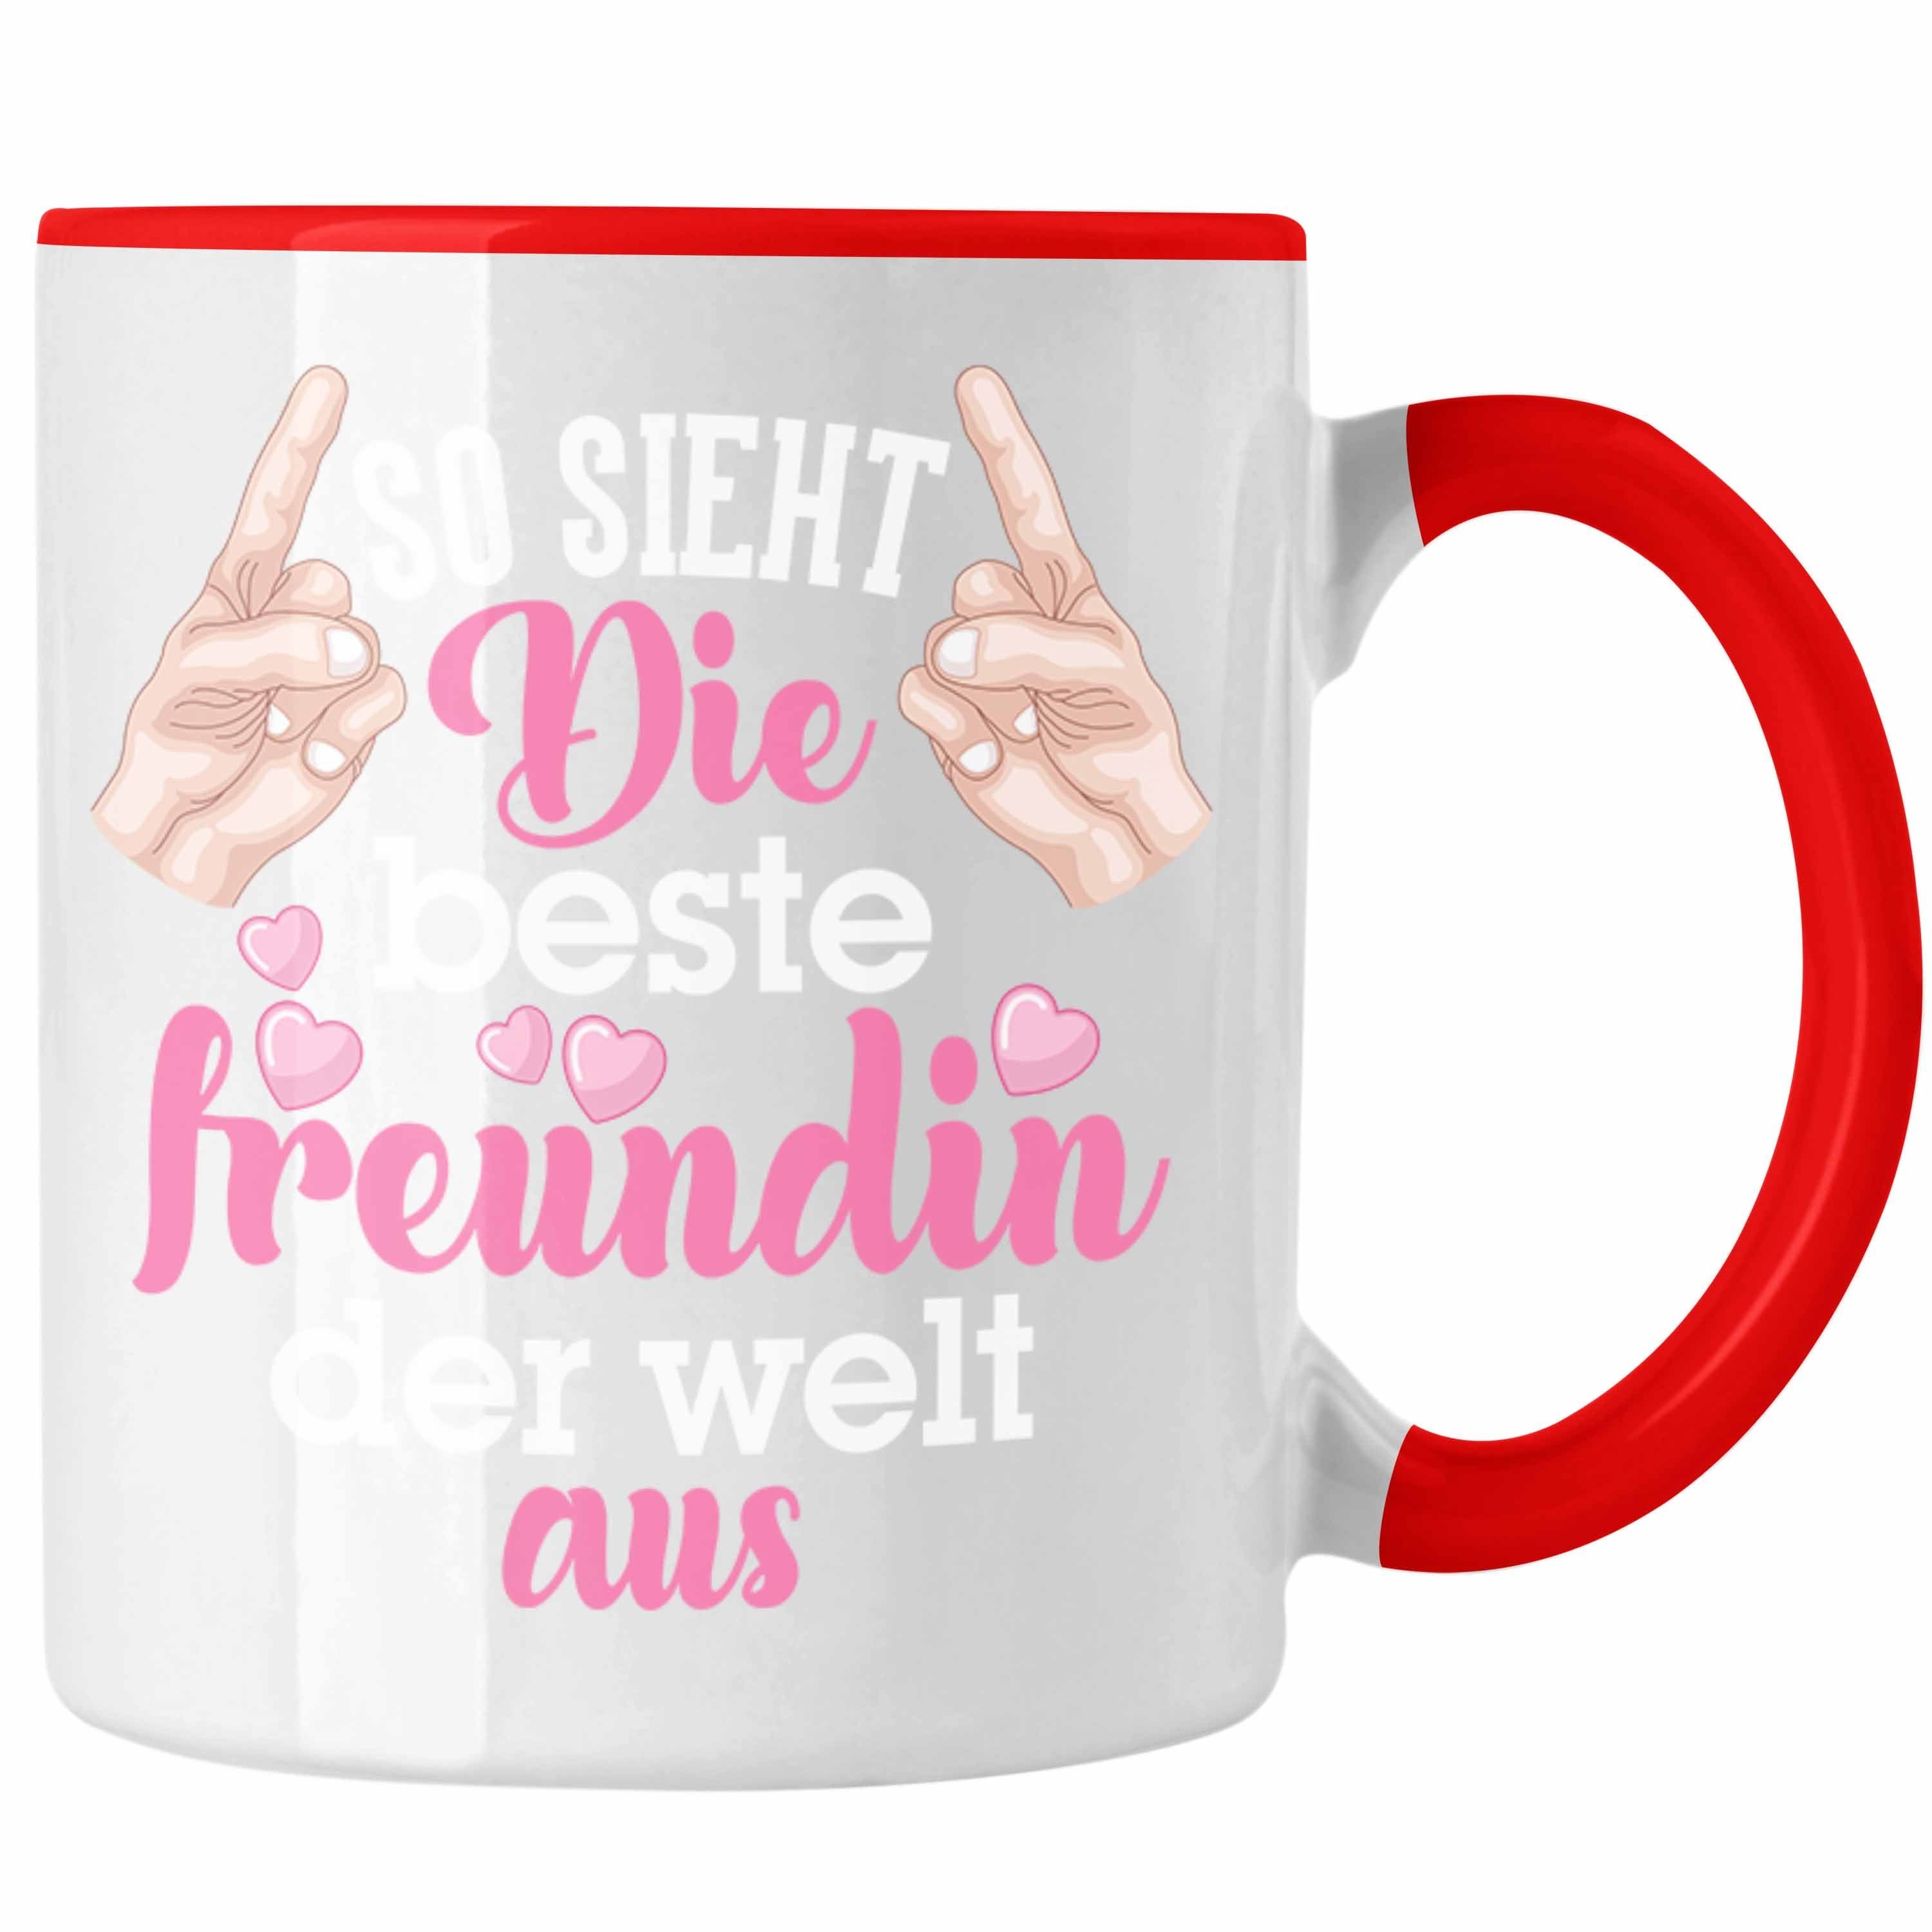 Trendation Tasse Trendation - Beste Freundin Tasse Geschenk Kaffeetasse Geschenkidee BFF Allerbeste Freundin Spruch Geburtstag Freundinnen Geschenkidee Rot